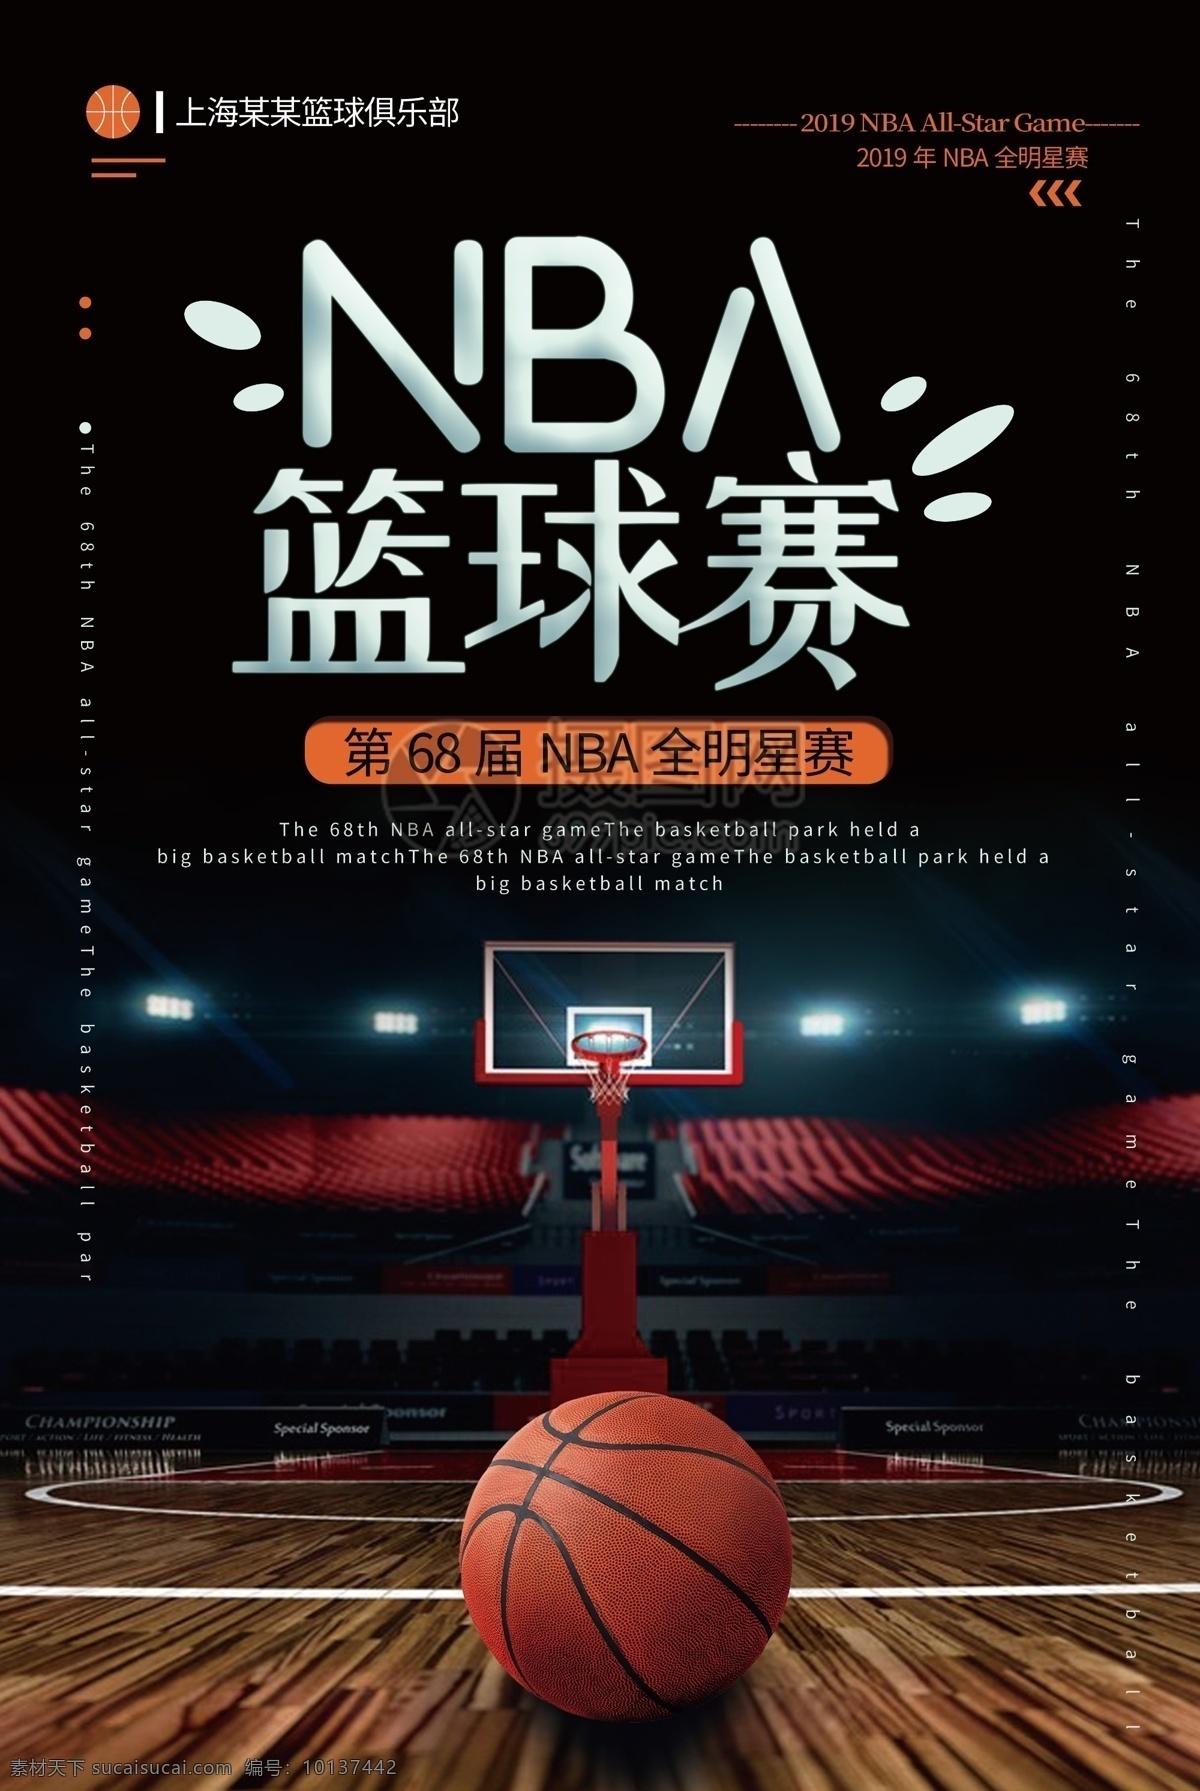 黑色 大气 届 nba 全 明星赛 海报 第68届 全明星 篮球赛 赛事 体育 比赛 运动 组队 篮球队员